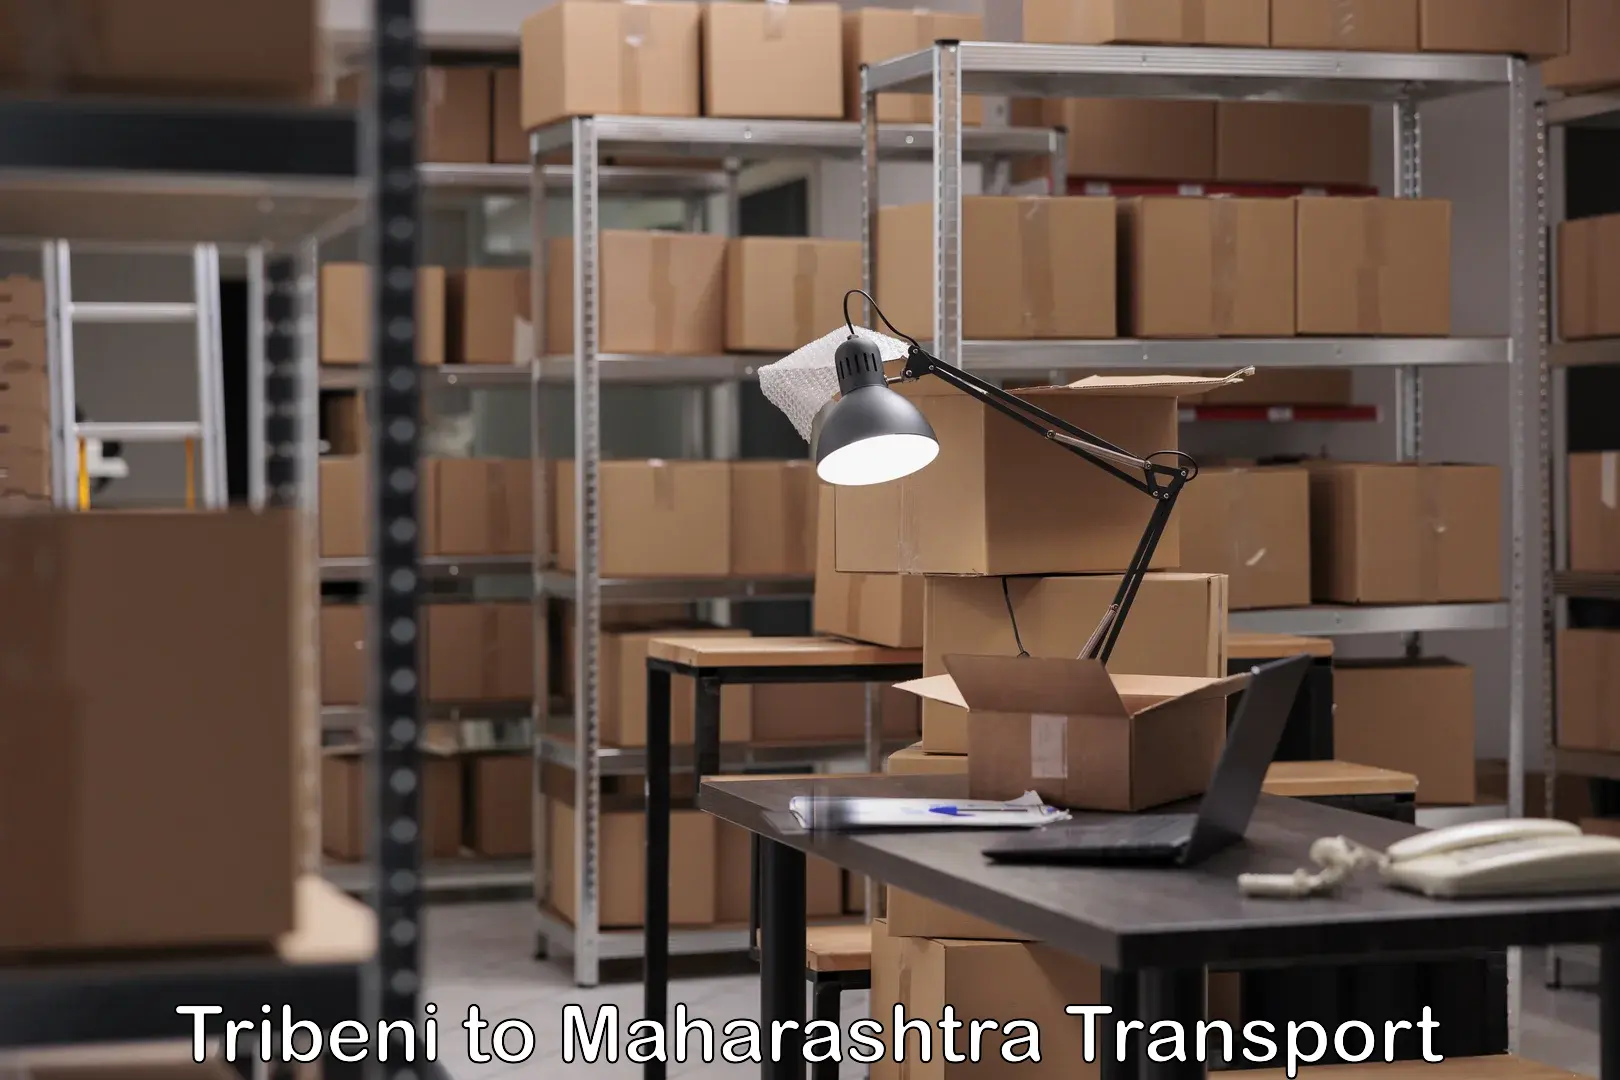 Furniture transport service Tribeni to Maharashtra